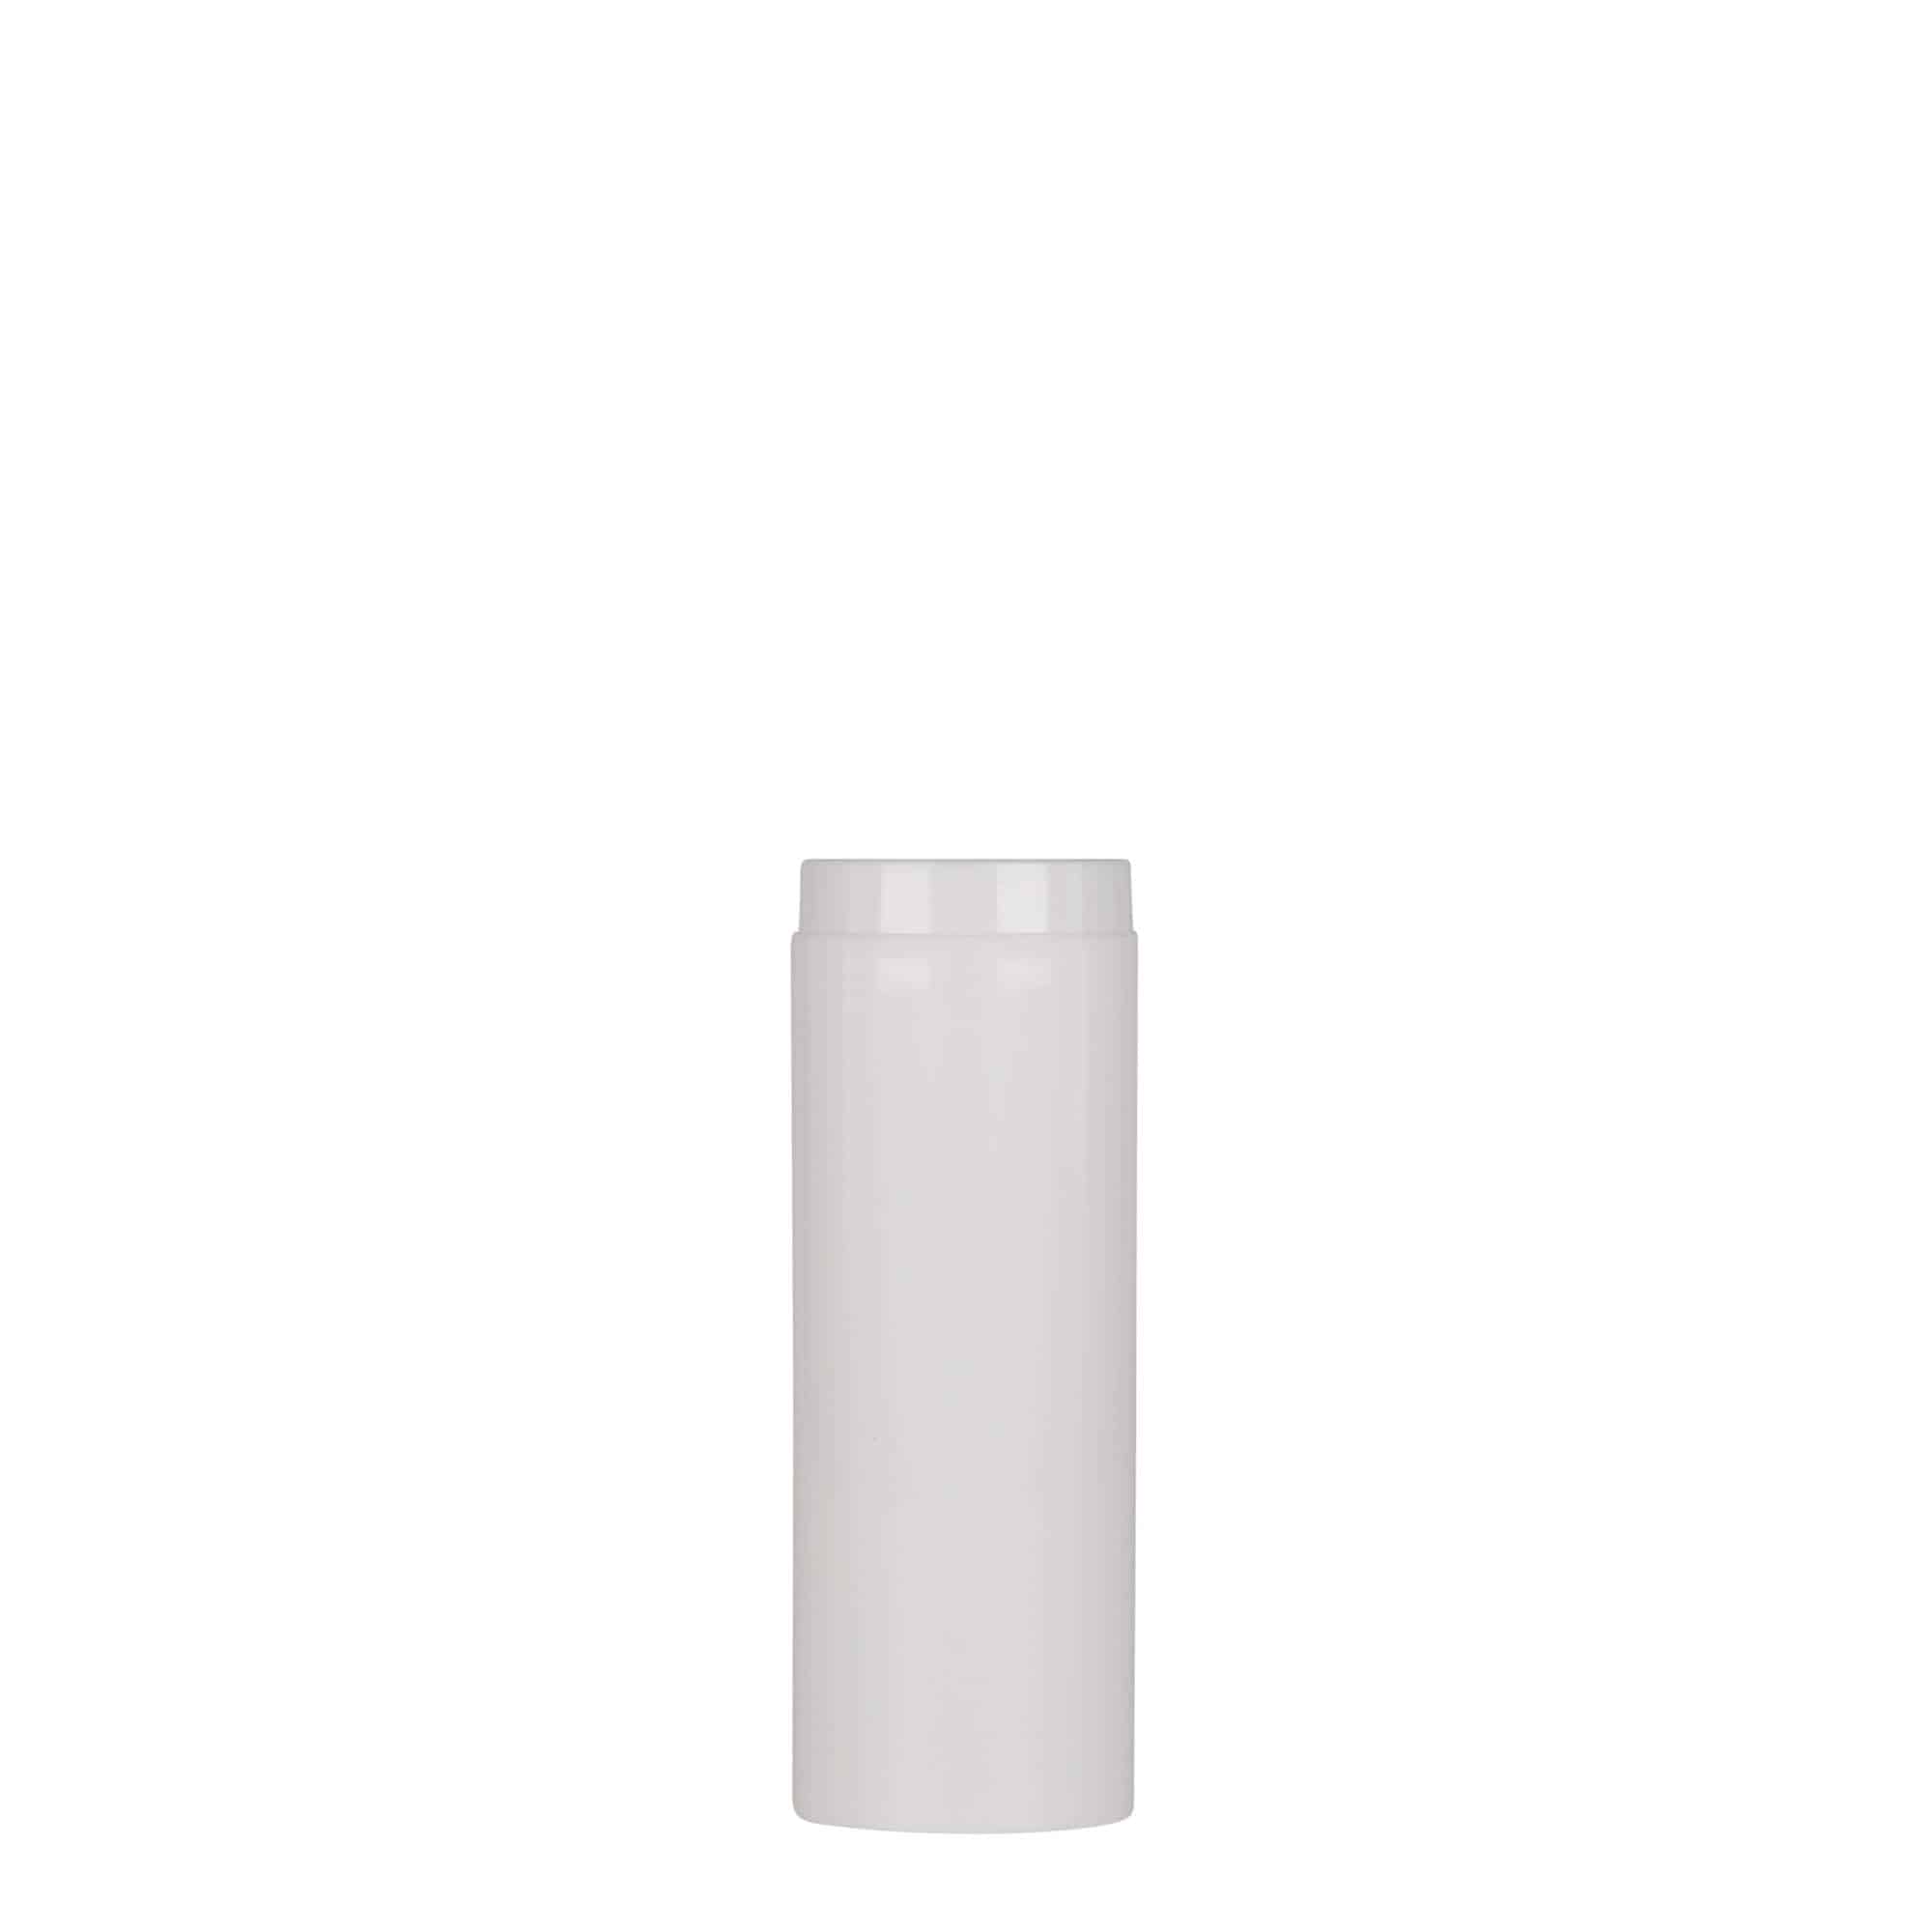 Bezvzduchový dávkovač 30 ml 'Micro', plast PP, bílý